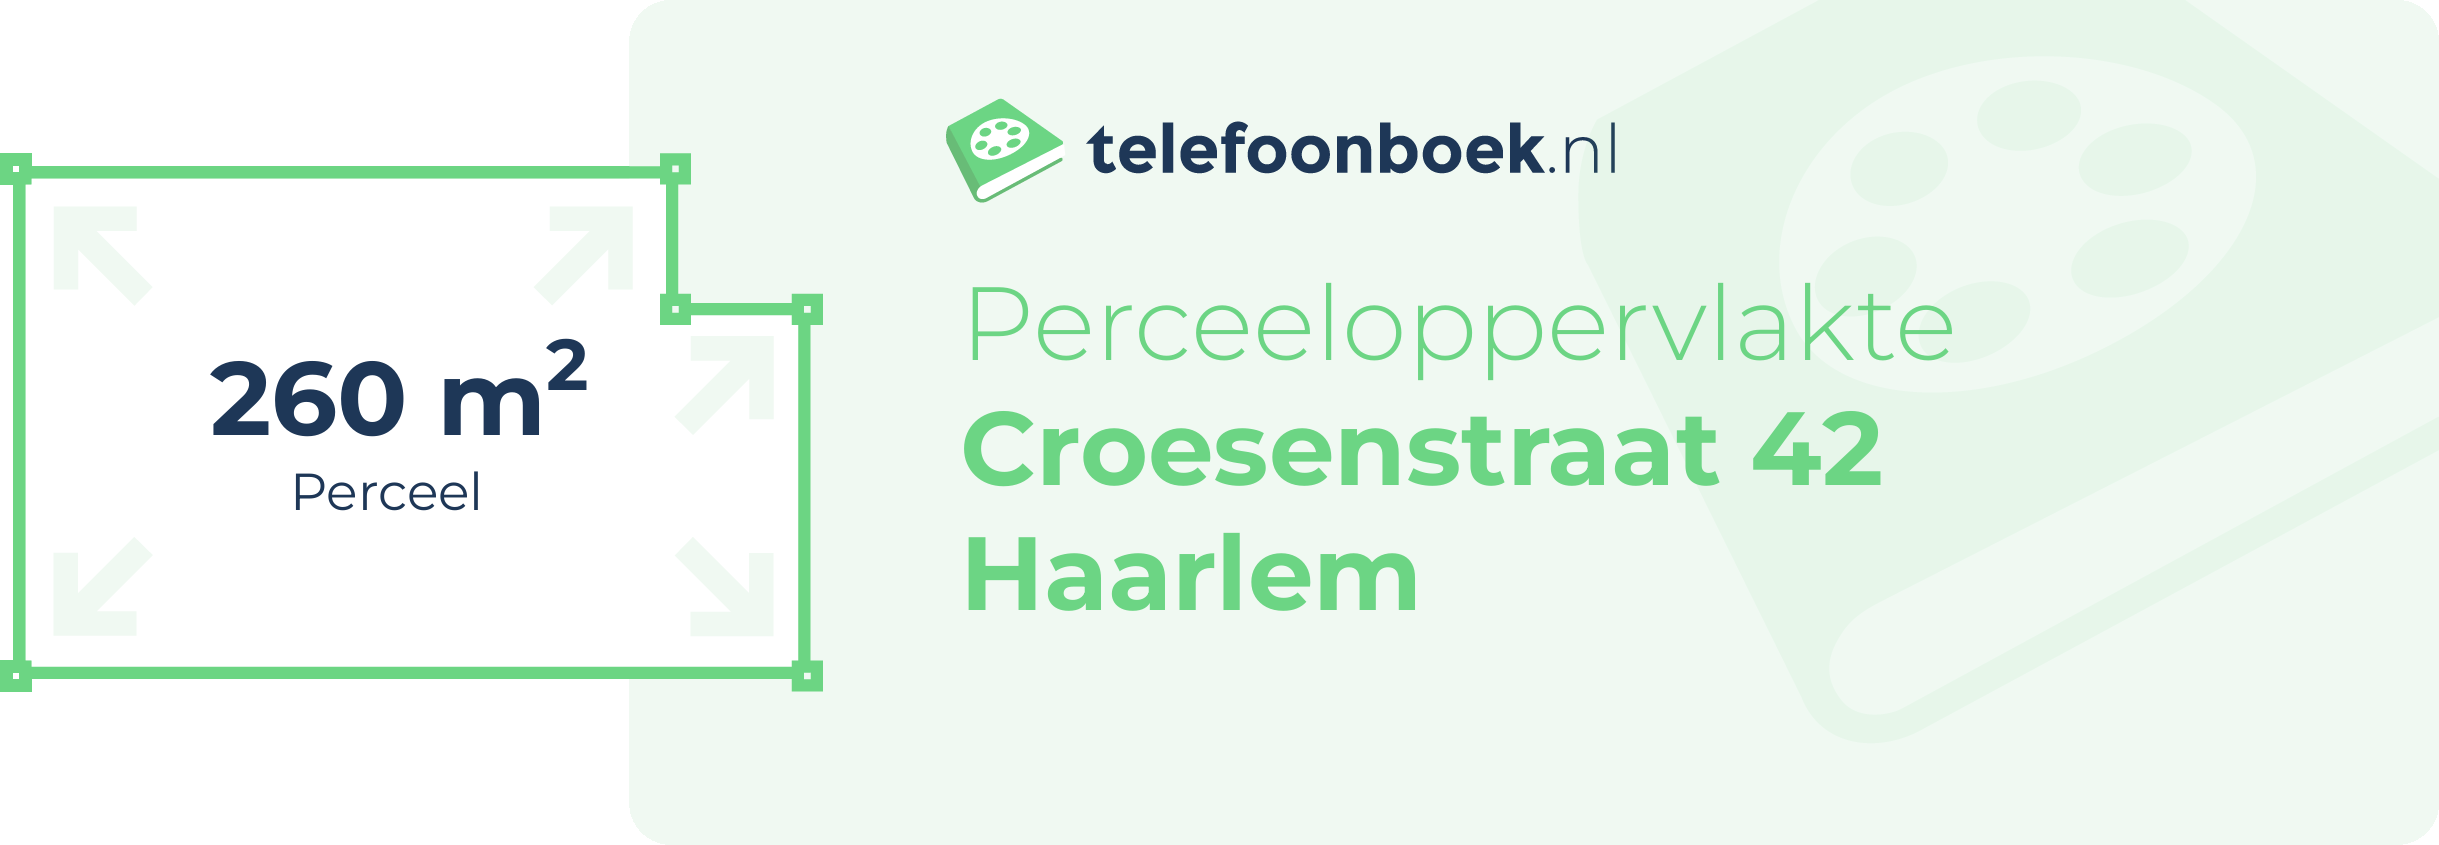 Perceeloppervlakte Croesenstraat 42 Haarlem